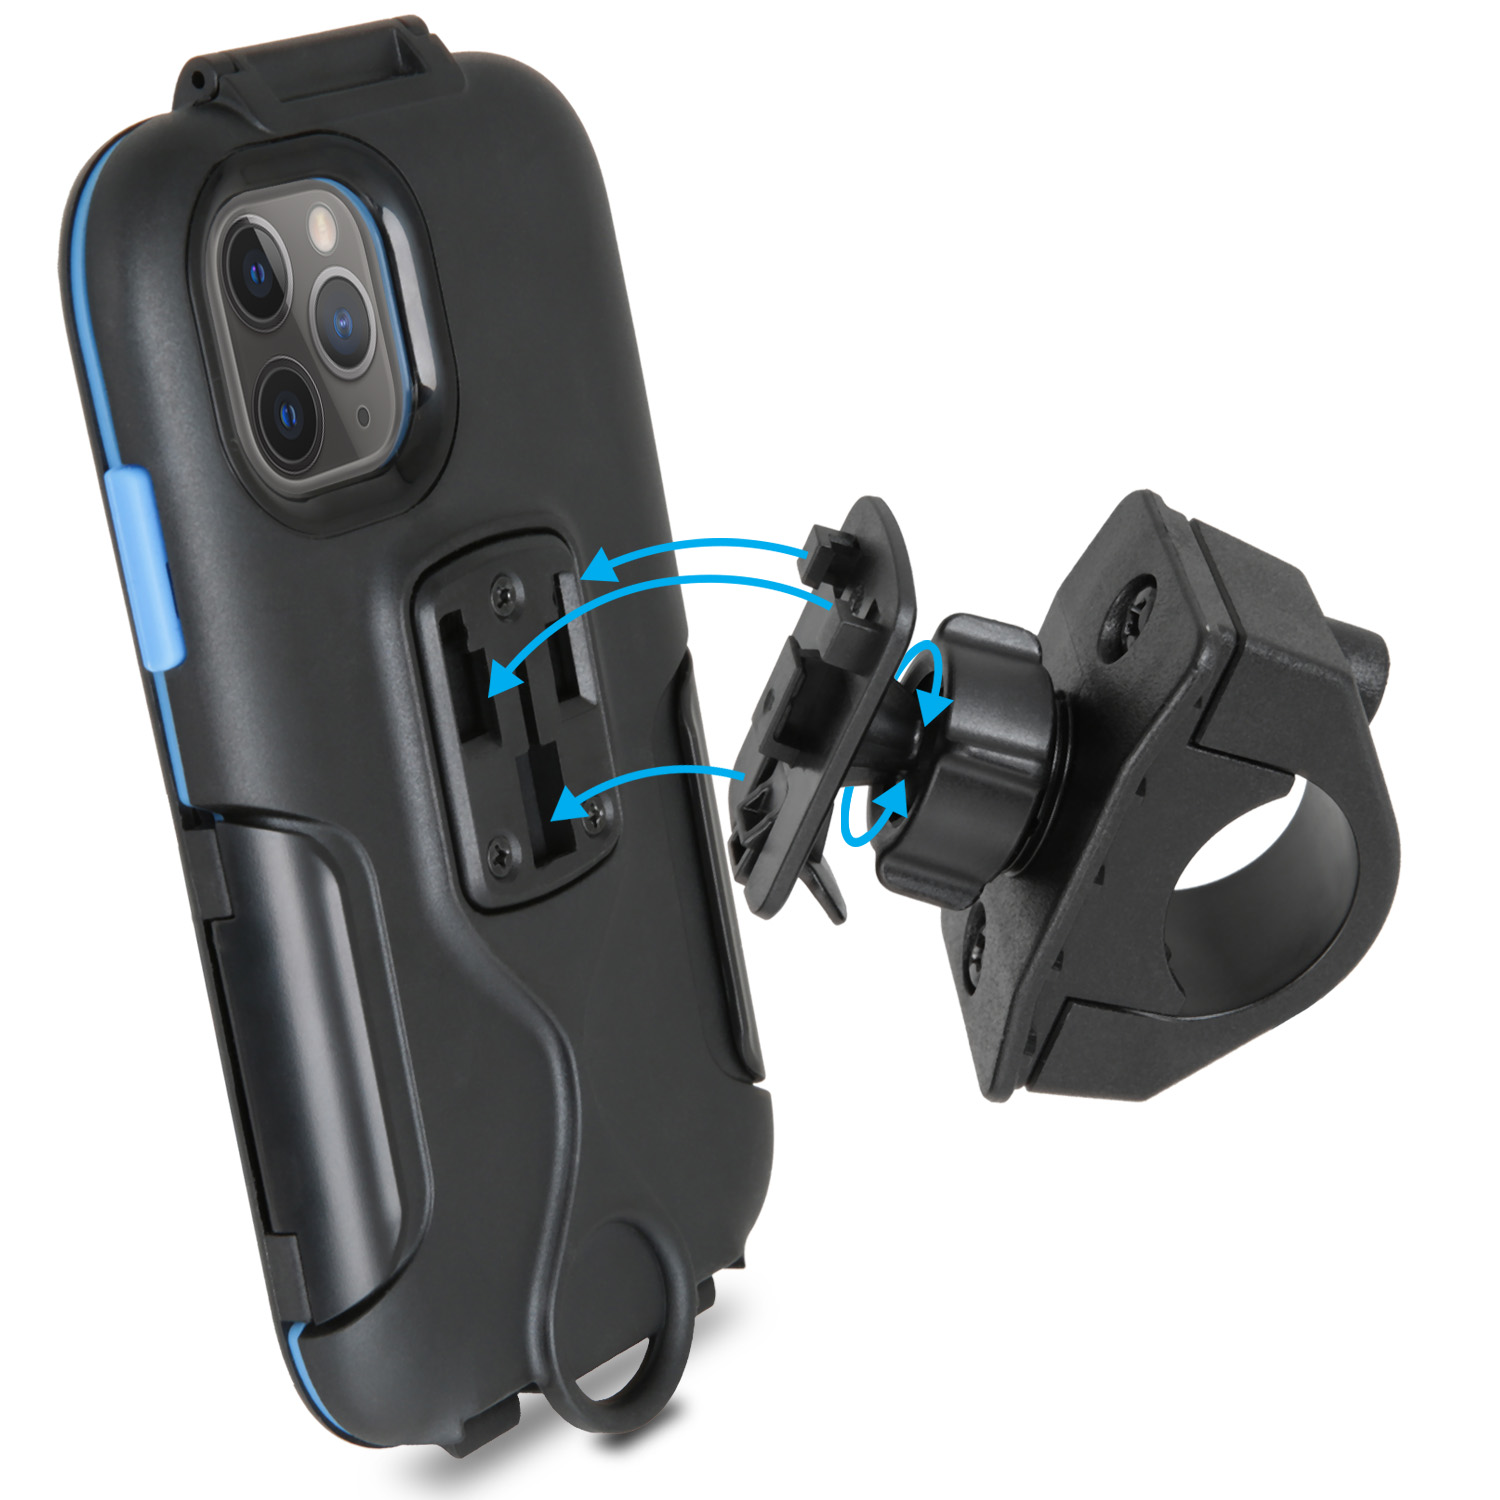 Tour X Fahrradhalterung WICKED Case schwarz CHILI + XS mit iPX4 Fahrradhalterung, Regendichte für Schutzhülle / iPhone Motorrad iPhone Set